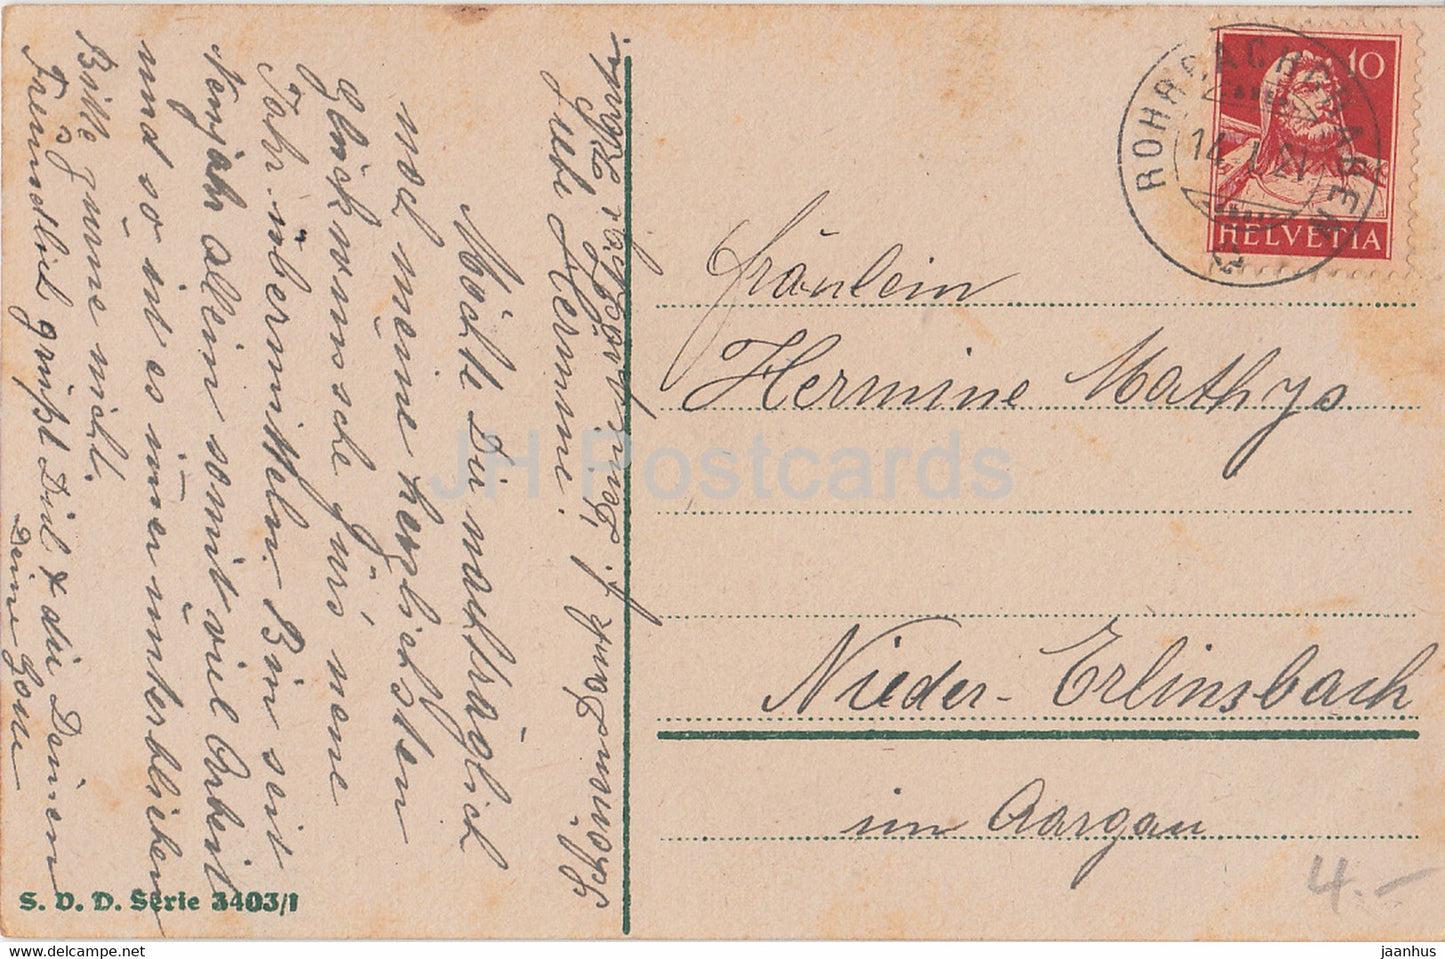 Carte de vœux du Nouvel An - Ein Gluckliches Neues Jahr - vue sur la ville - SVD 3403/1 - carte postale ancienne - 1921 - Allemagne - utilisé